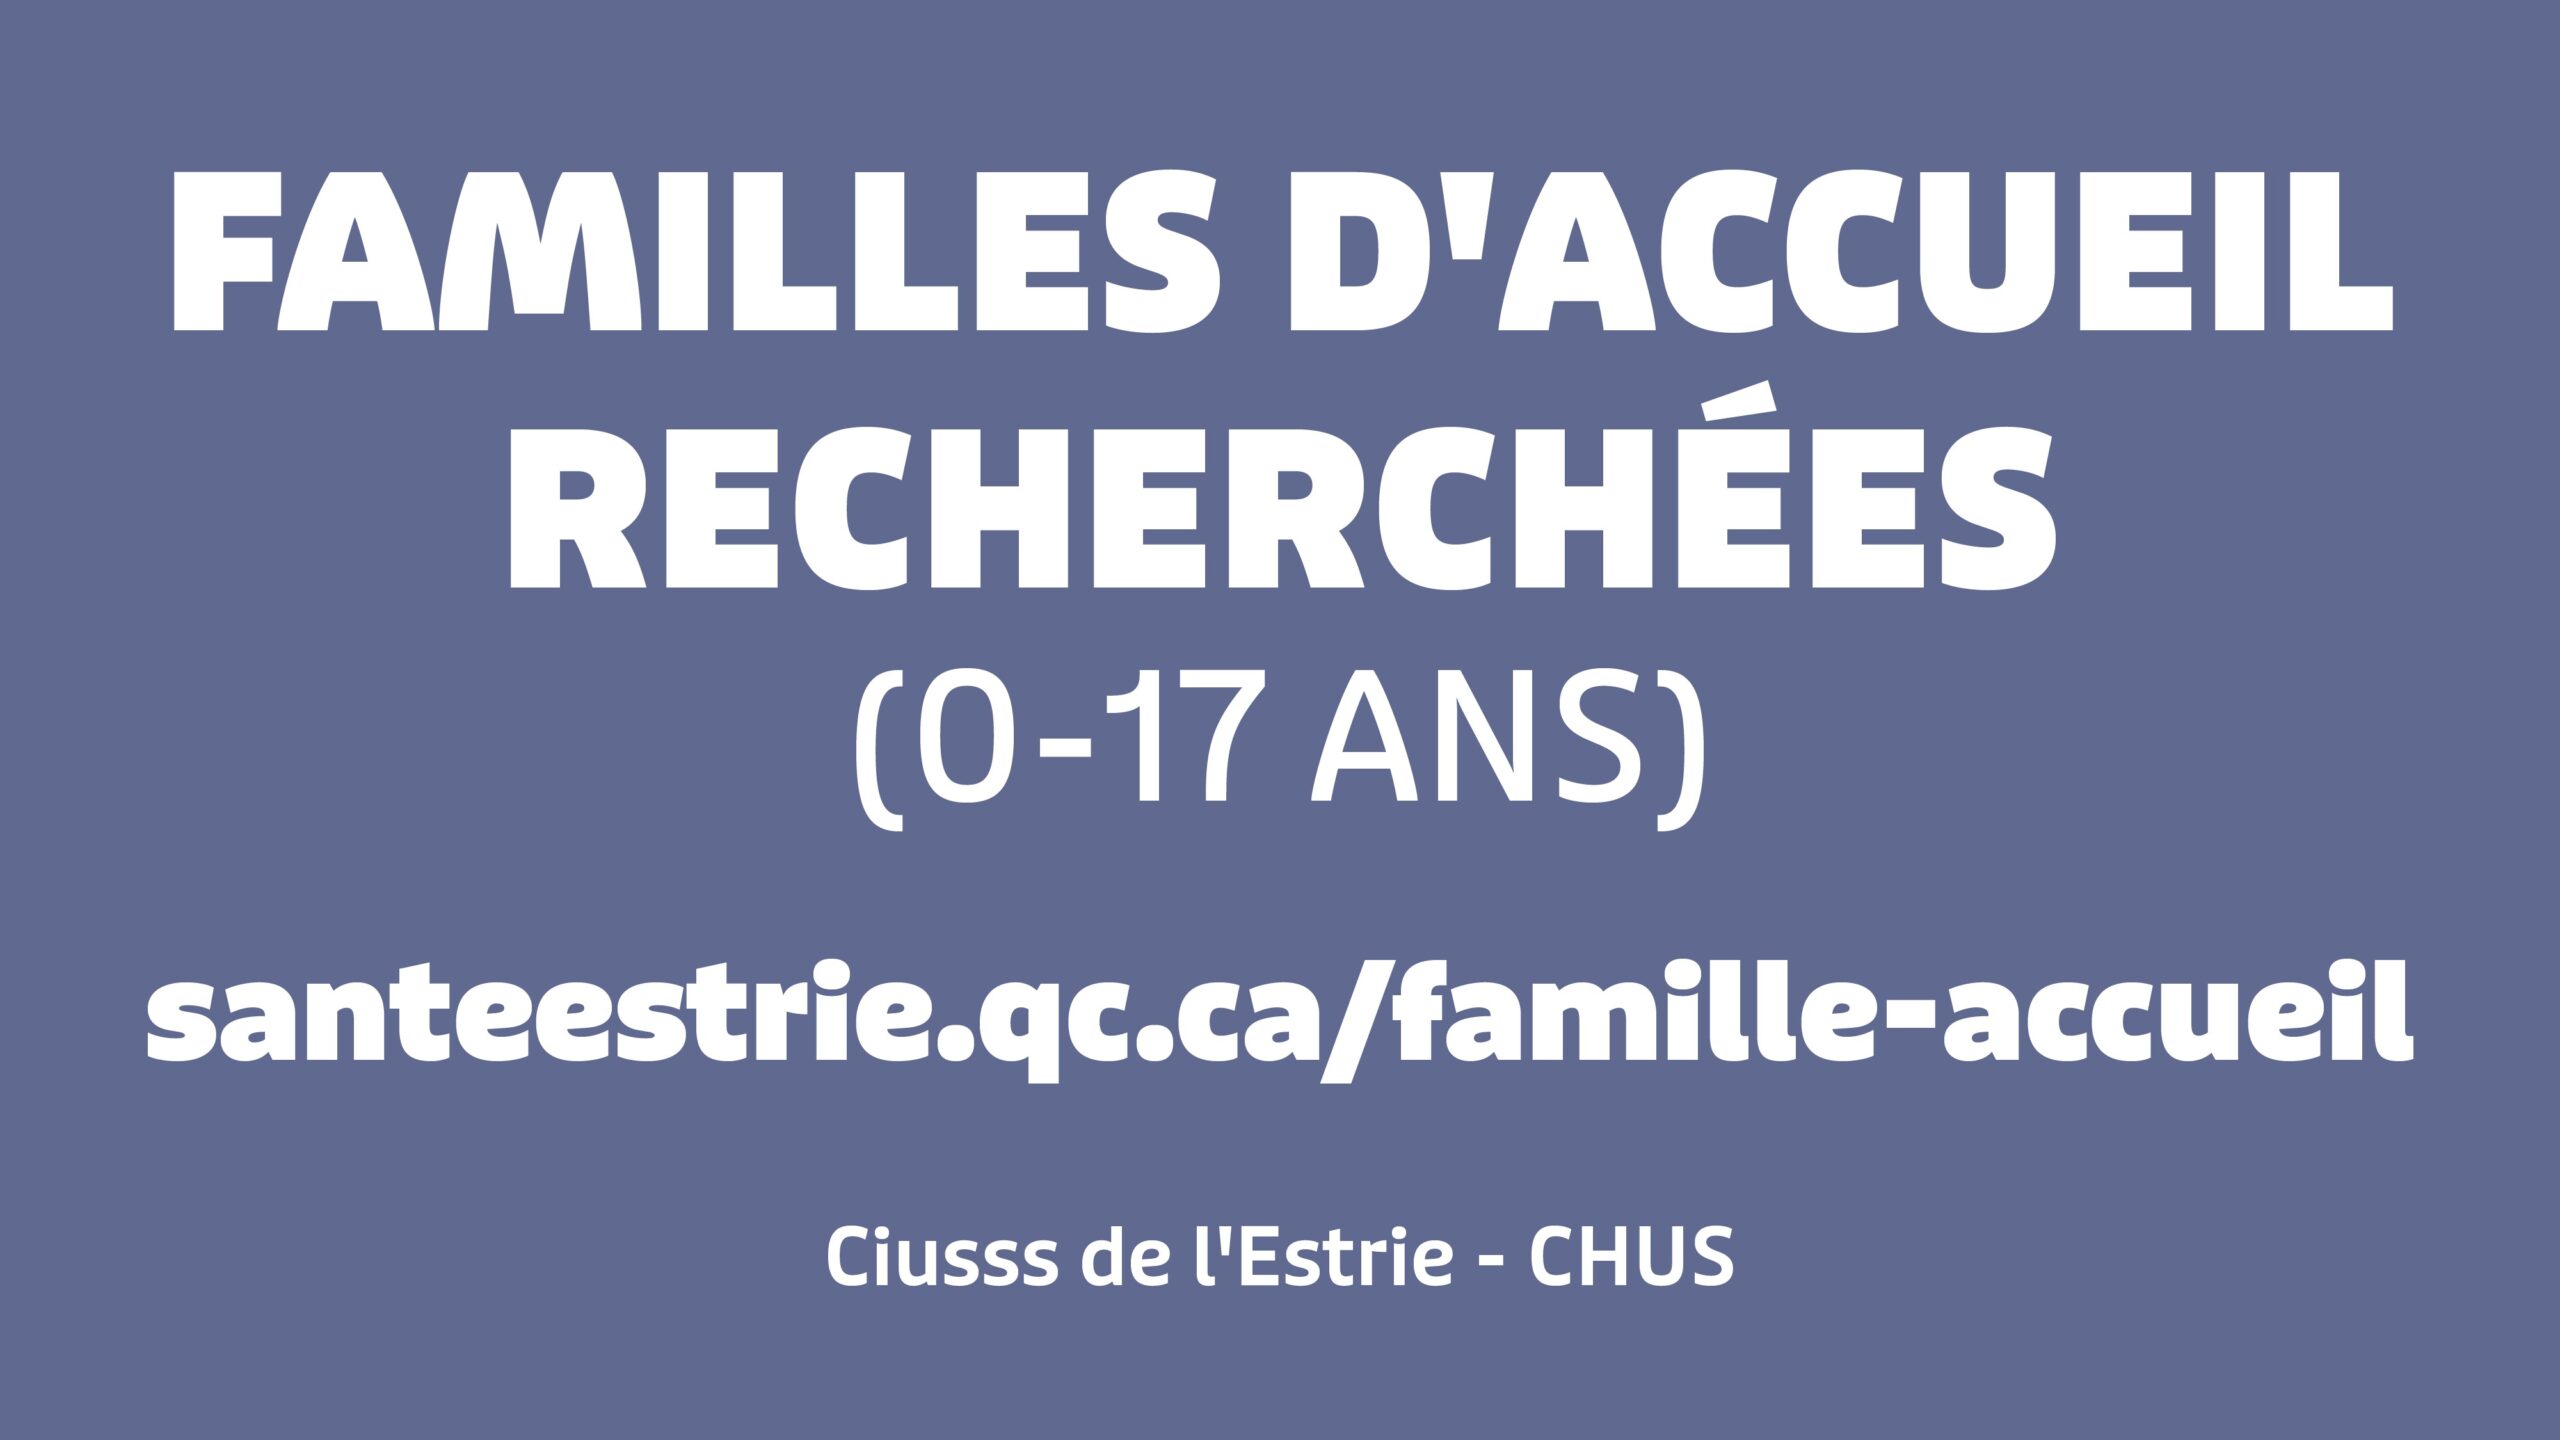 (Français) Appel à tous: Familles d